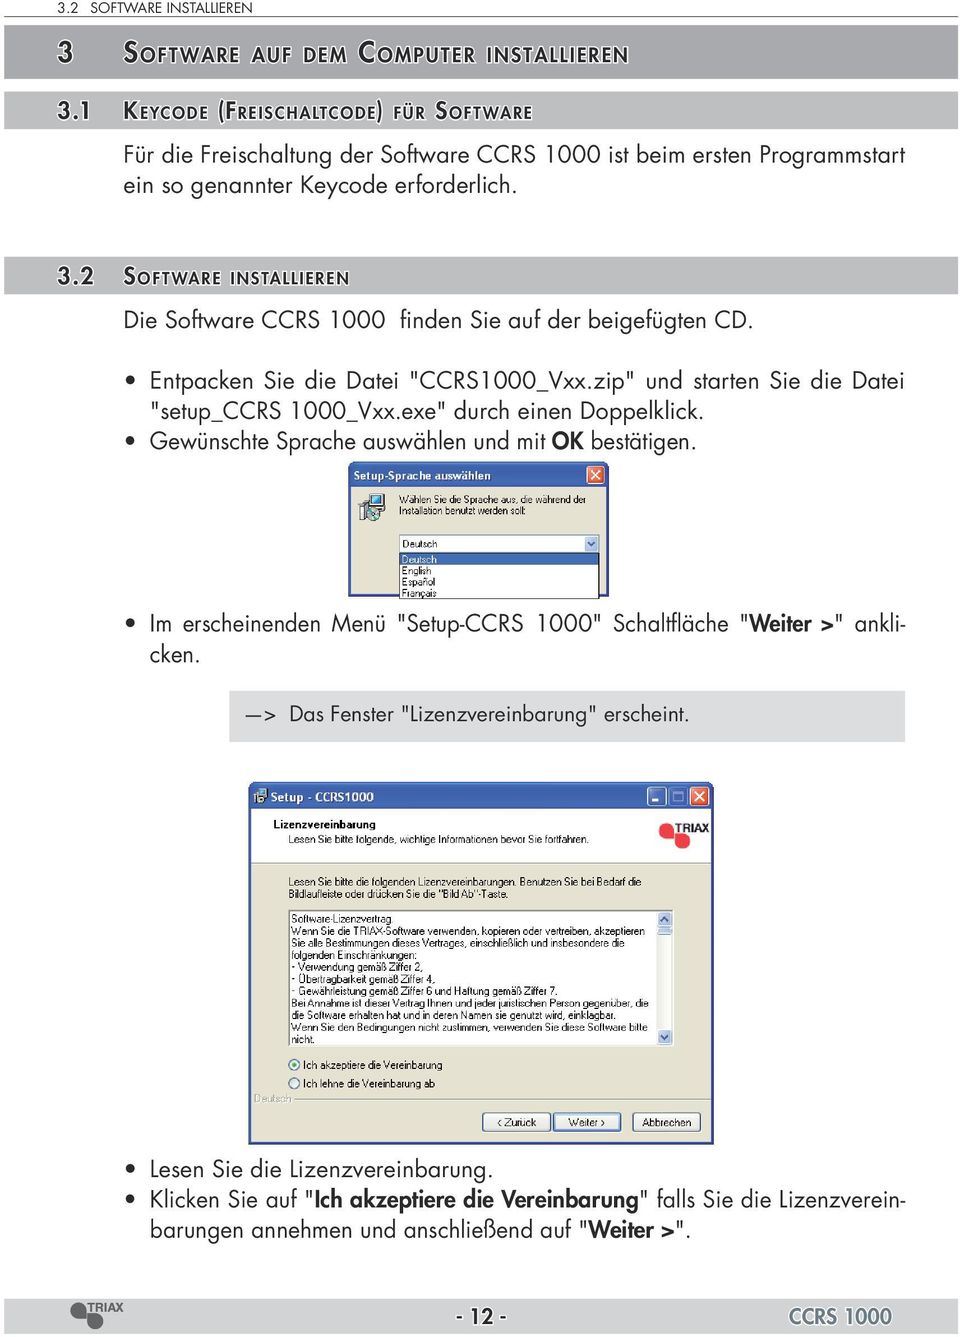 2 Soft ware installieren Die Software CCRS 1000 finden Sie auf der beigefügten CD. Entpacken Sie die Datei "CCRS1000_Vxx.zip" und starten Sie die Datei "setup_ccrs 1000_Vxx.